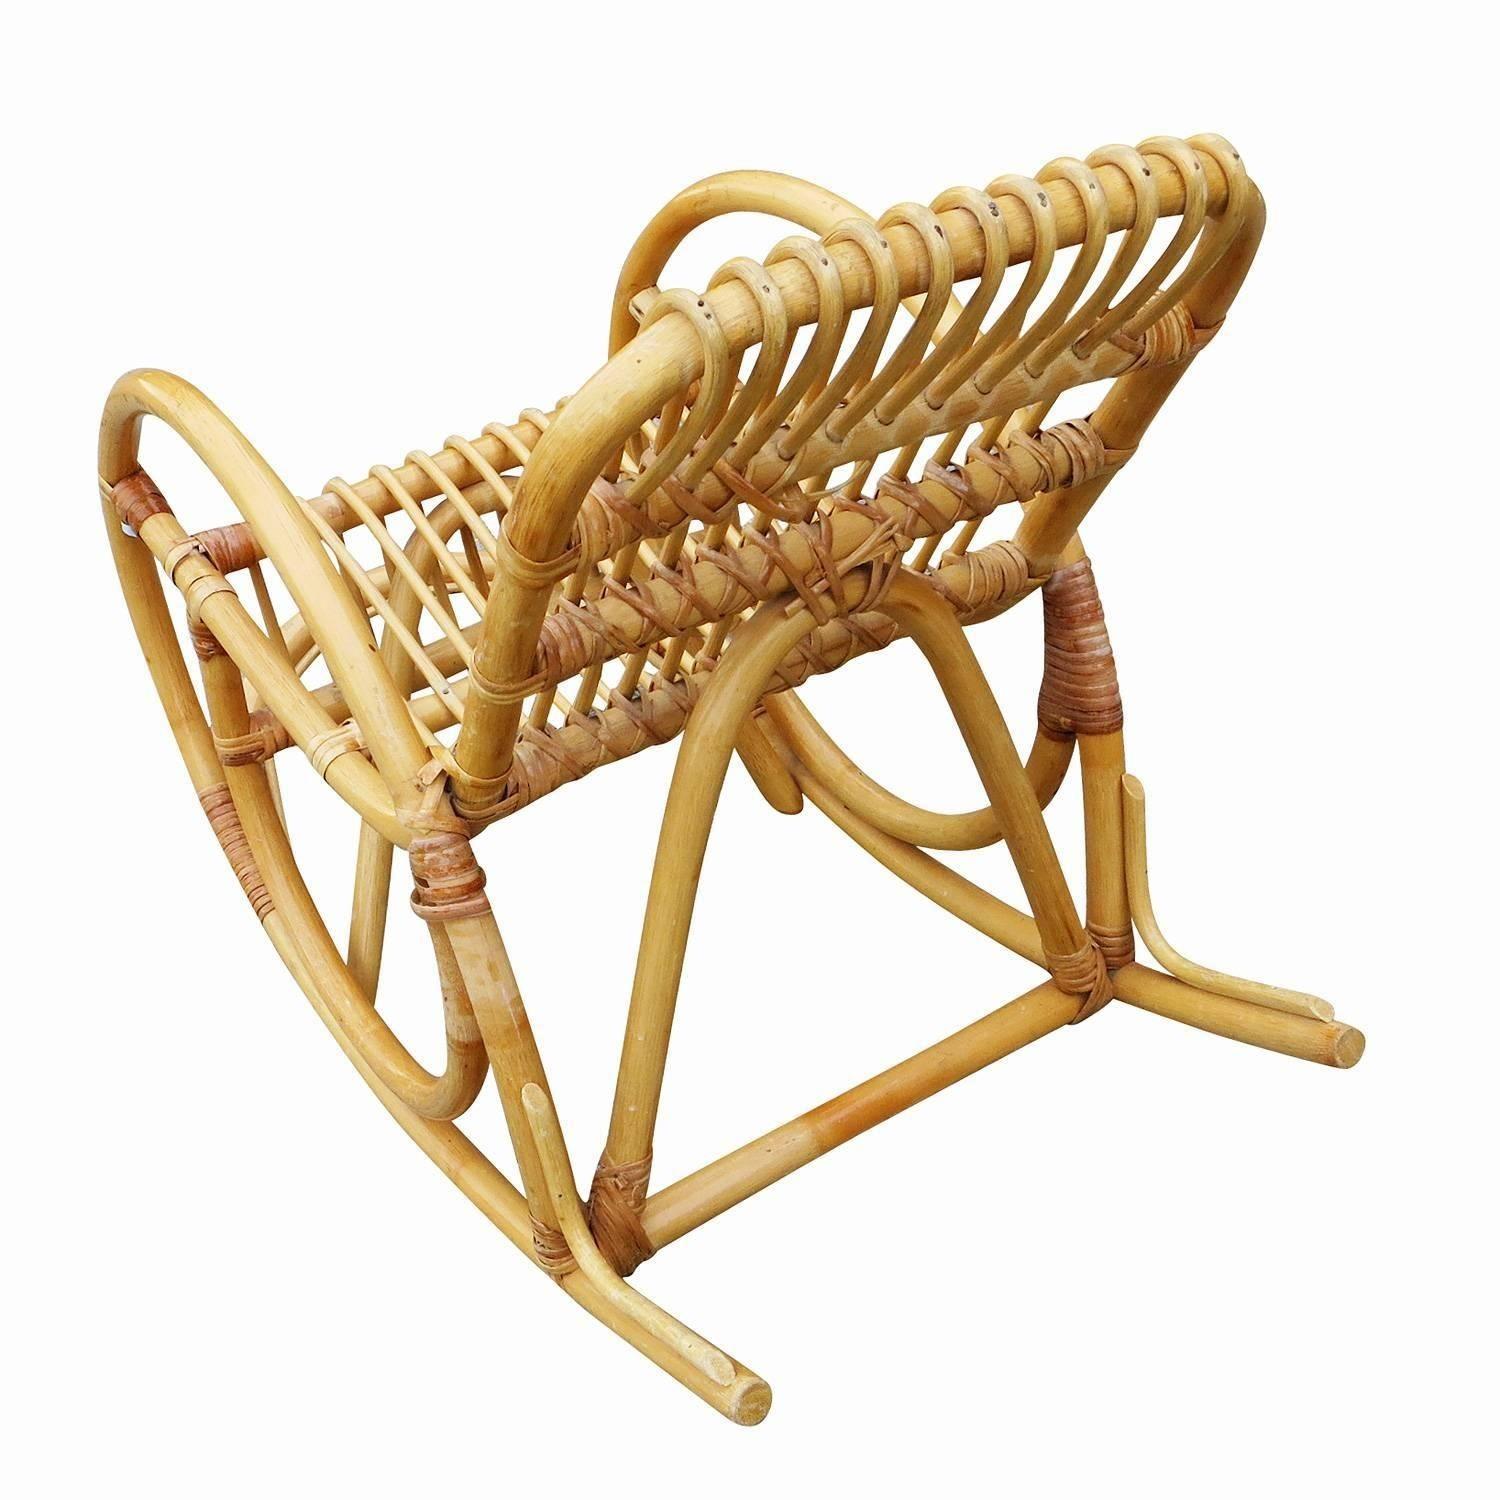 Restored Vintage Rare Snake Arm Rattan Children's Rocking Chair 1